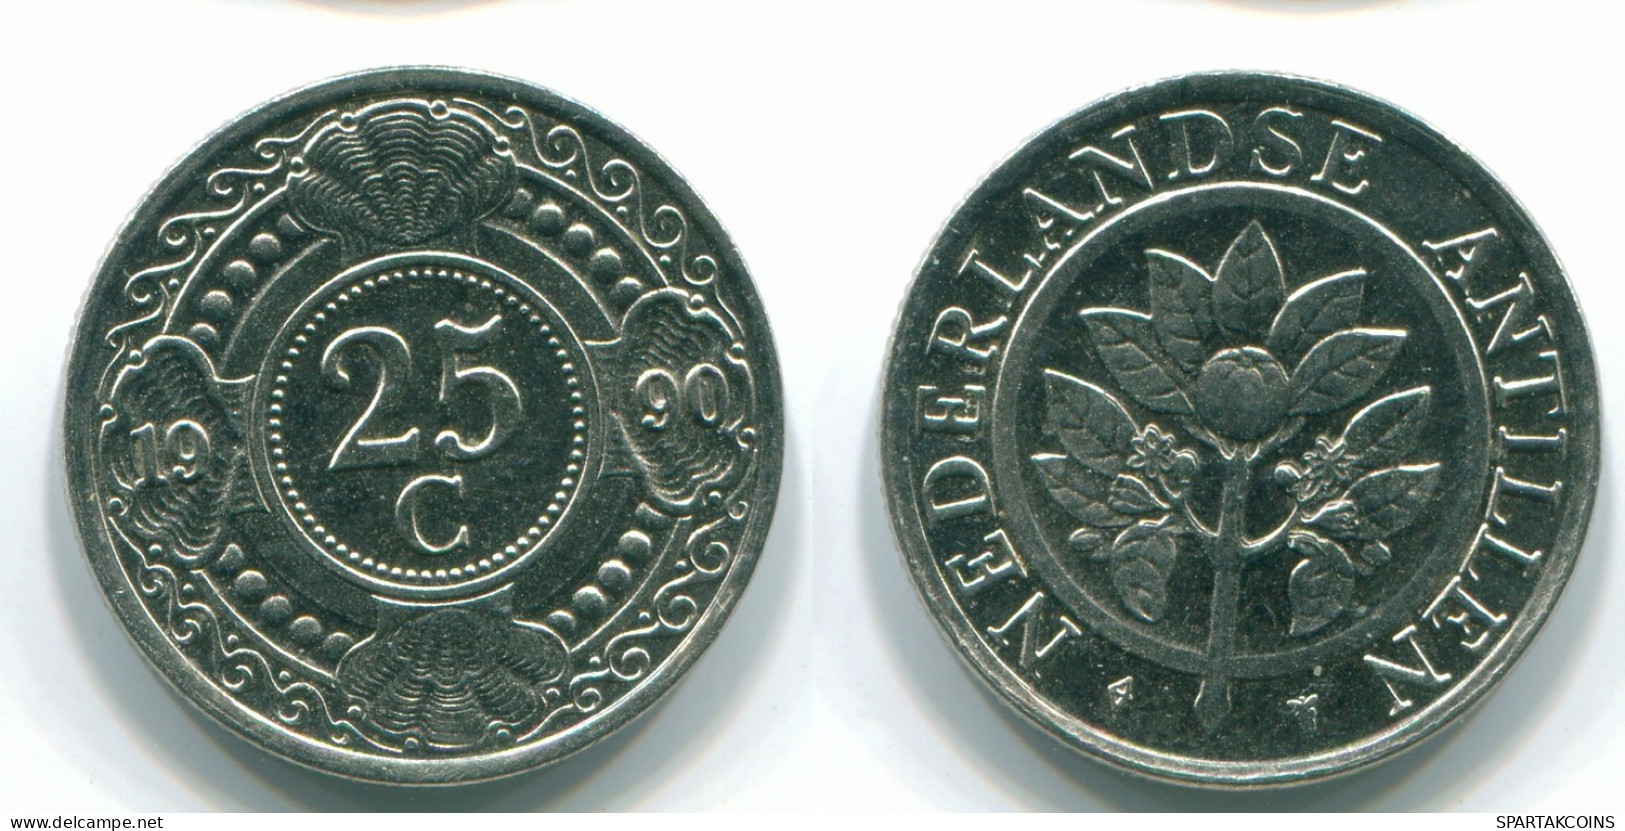 25 CENTS 1990 NIEDERLÄNDISCHE ANTILLEN Nickel Koloniale Münze #S11260.D.A - Antilles Néerlandaises